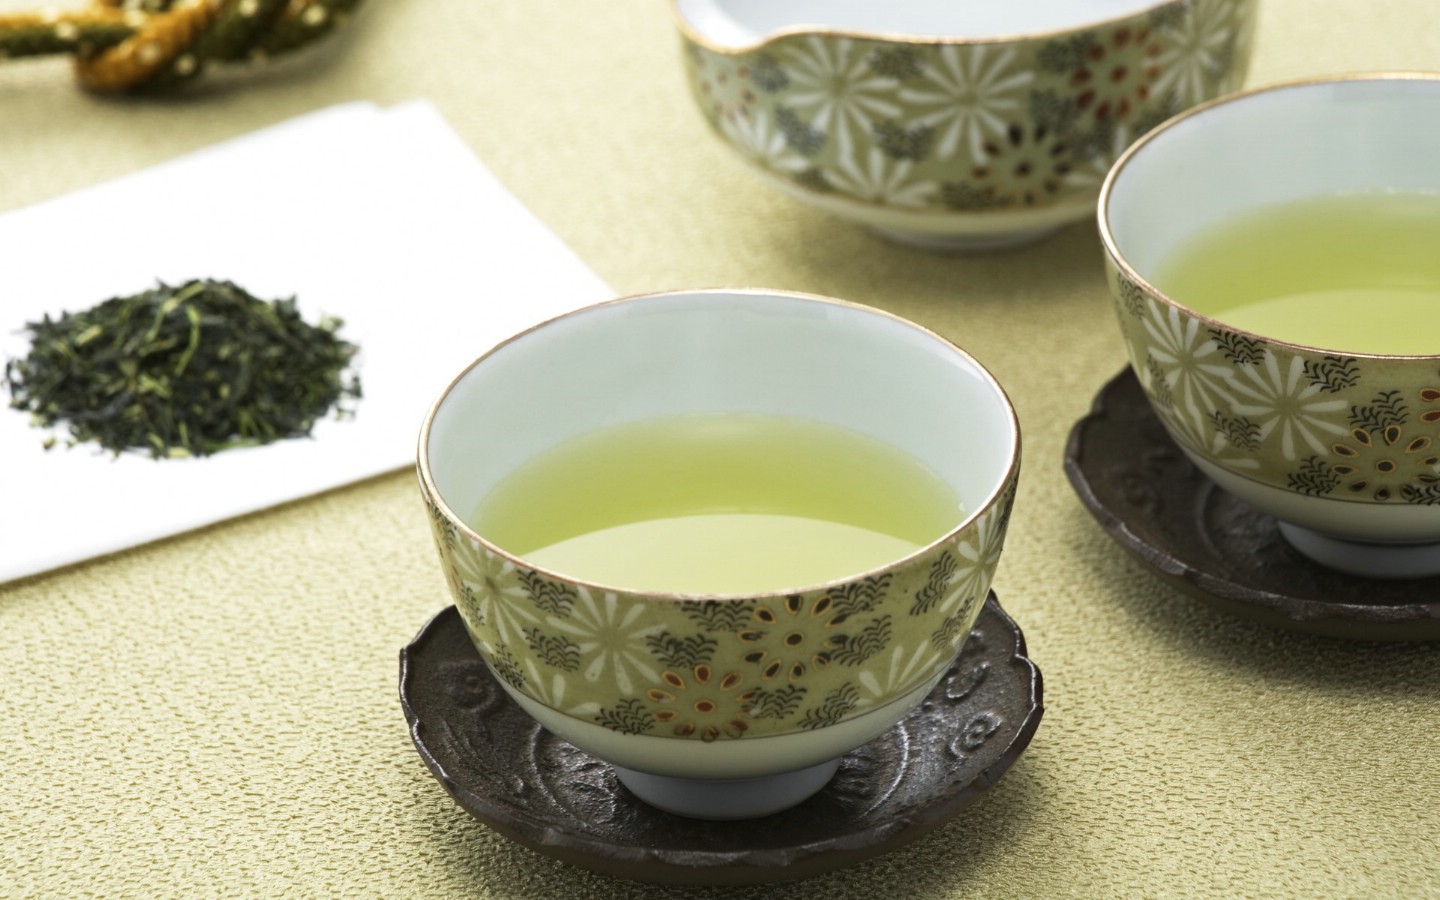 壁纸1440x900 日本新茶图片 日本茶道摄影壁纸 日本茶道文化与健康饮品壁纸 日本茶道文化与健康饮品图片 日本茶道文化与健康饮品素材 摄影壁纸 摄影图库 摄影图片素材桌面壁纸